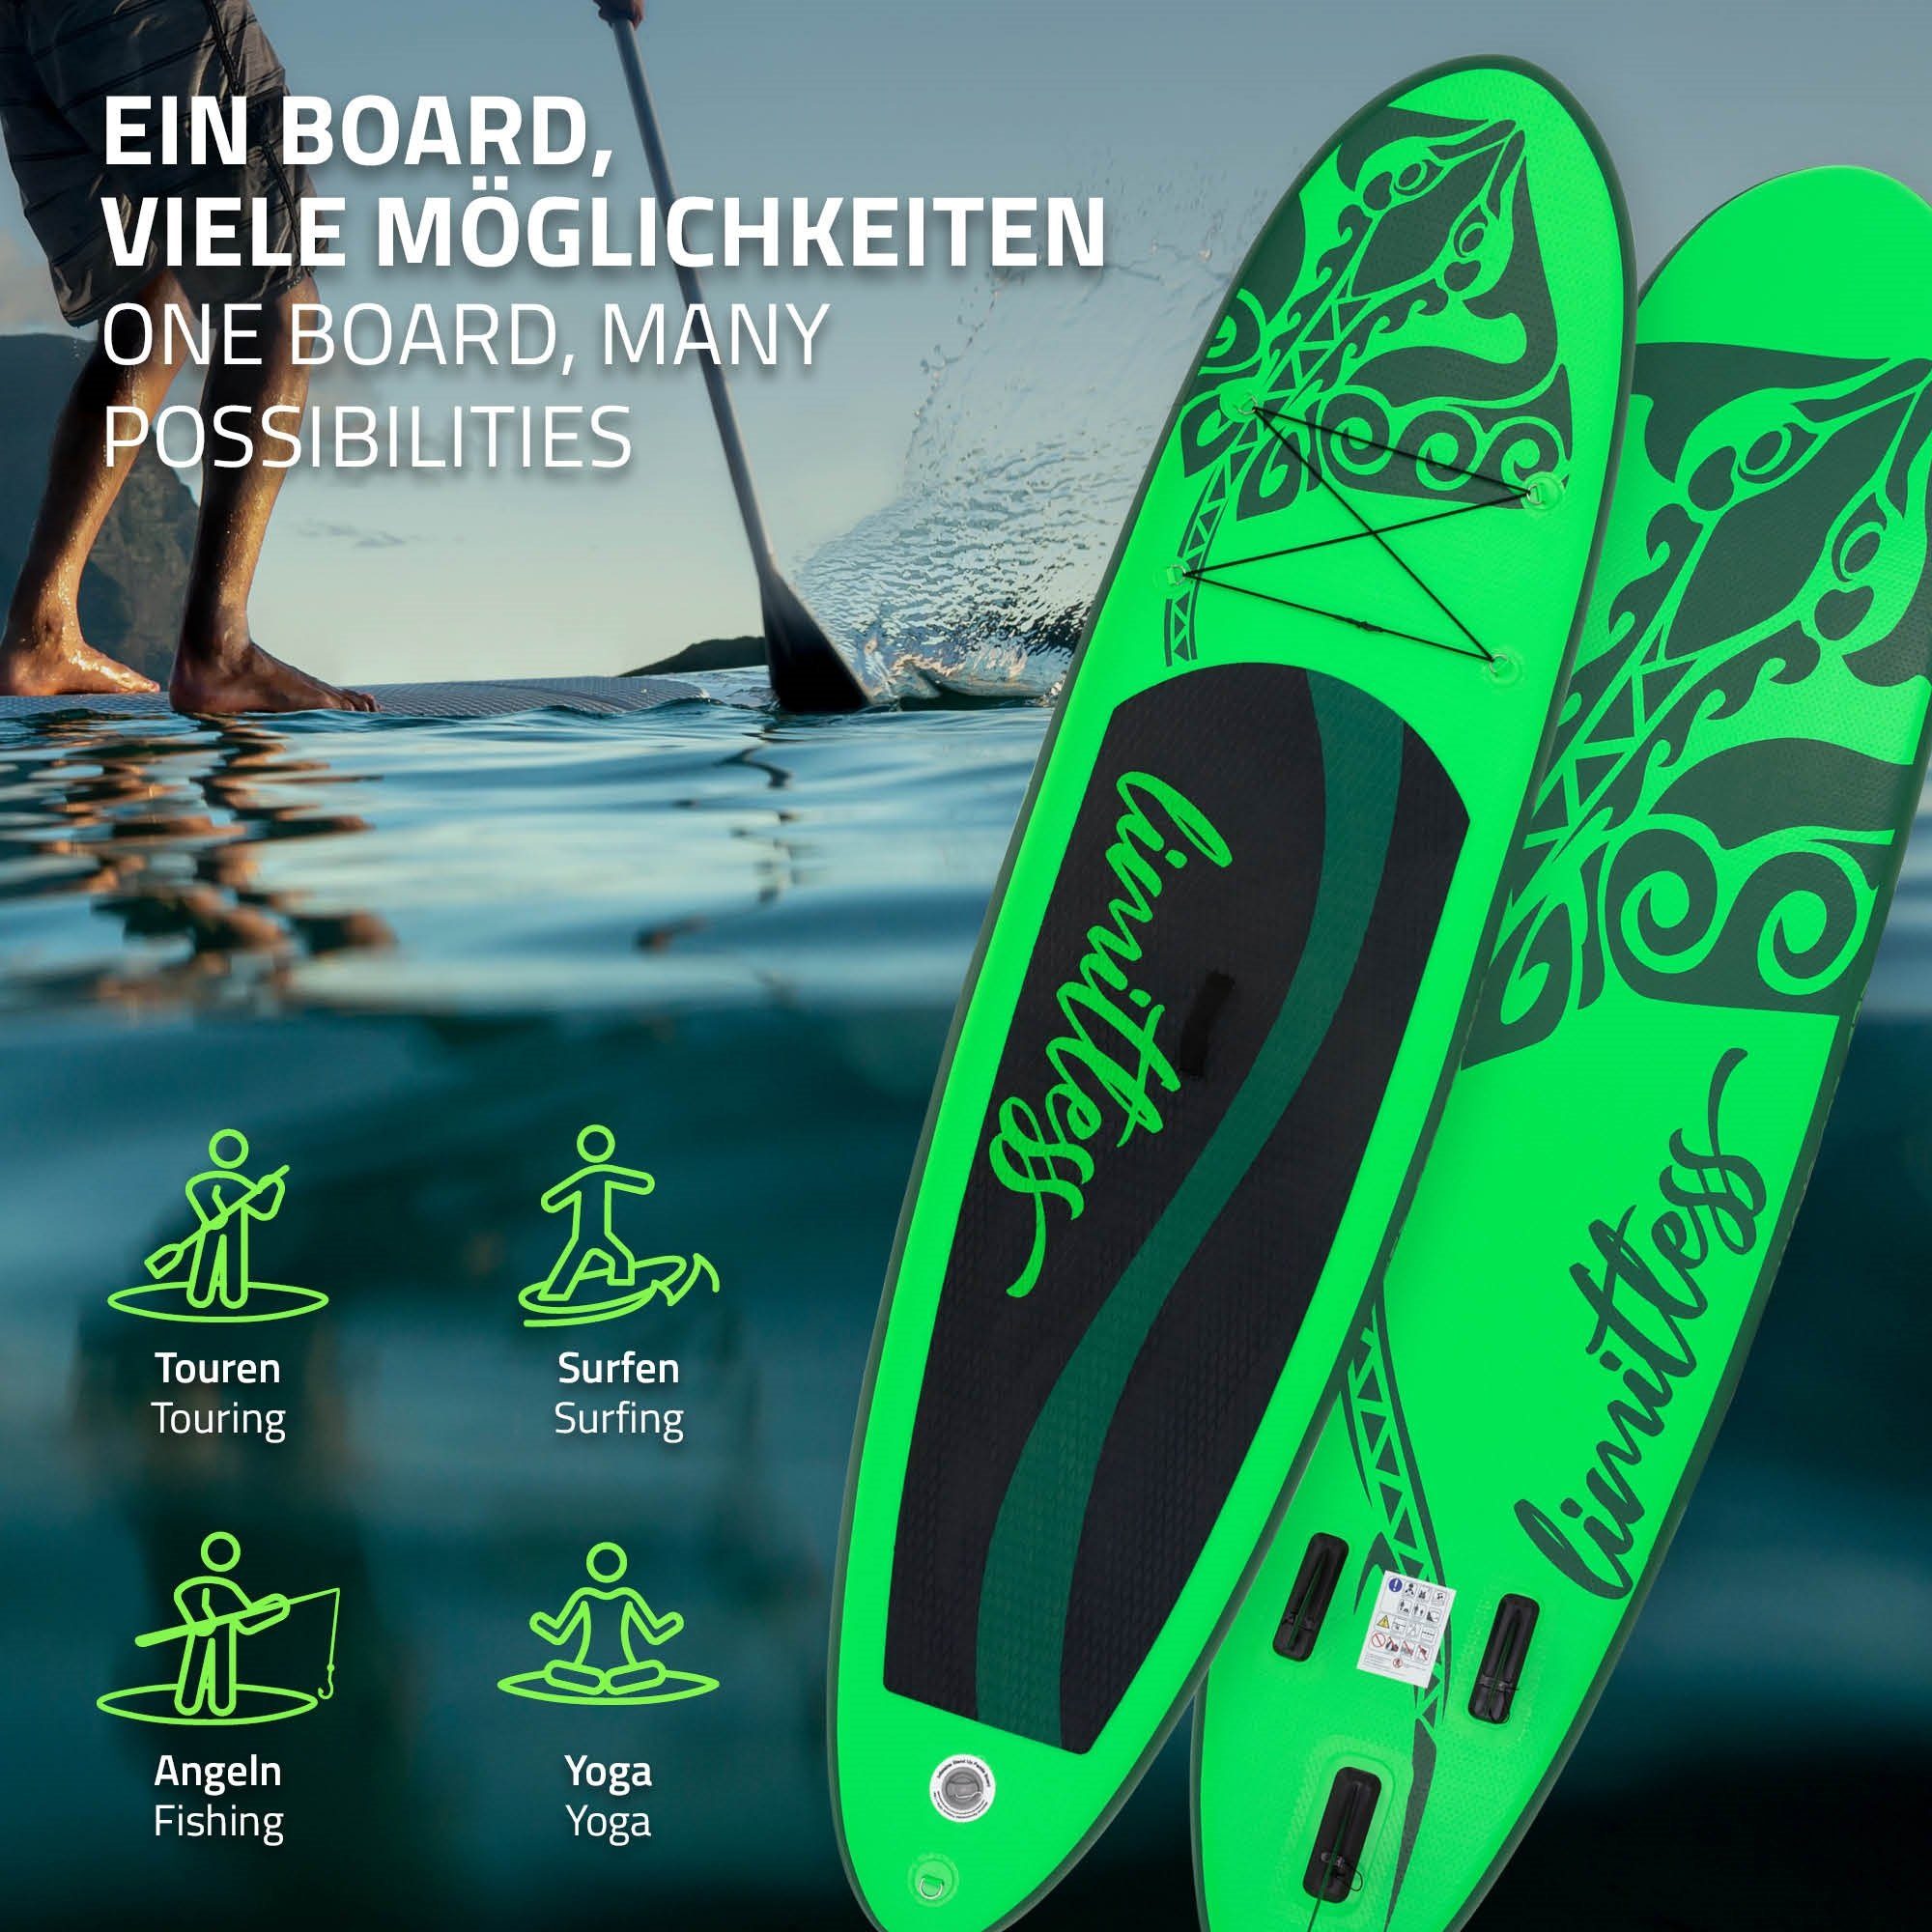 ECD Germany SUP-Board Paddle Pumpe Grün Limitless Up PVC bis Tragetasche Stand Zubehör Aufblasbares Board Surfboard, 120kg 308x76x10cm